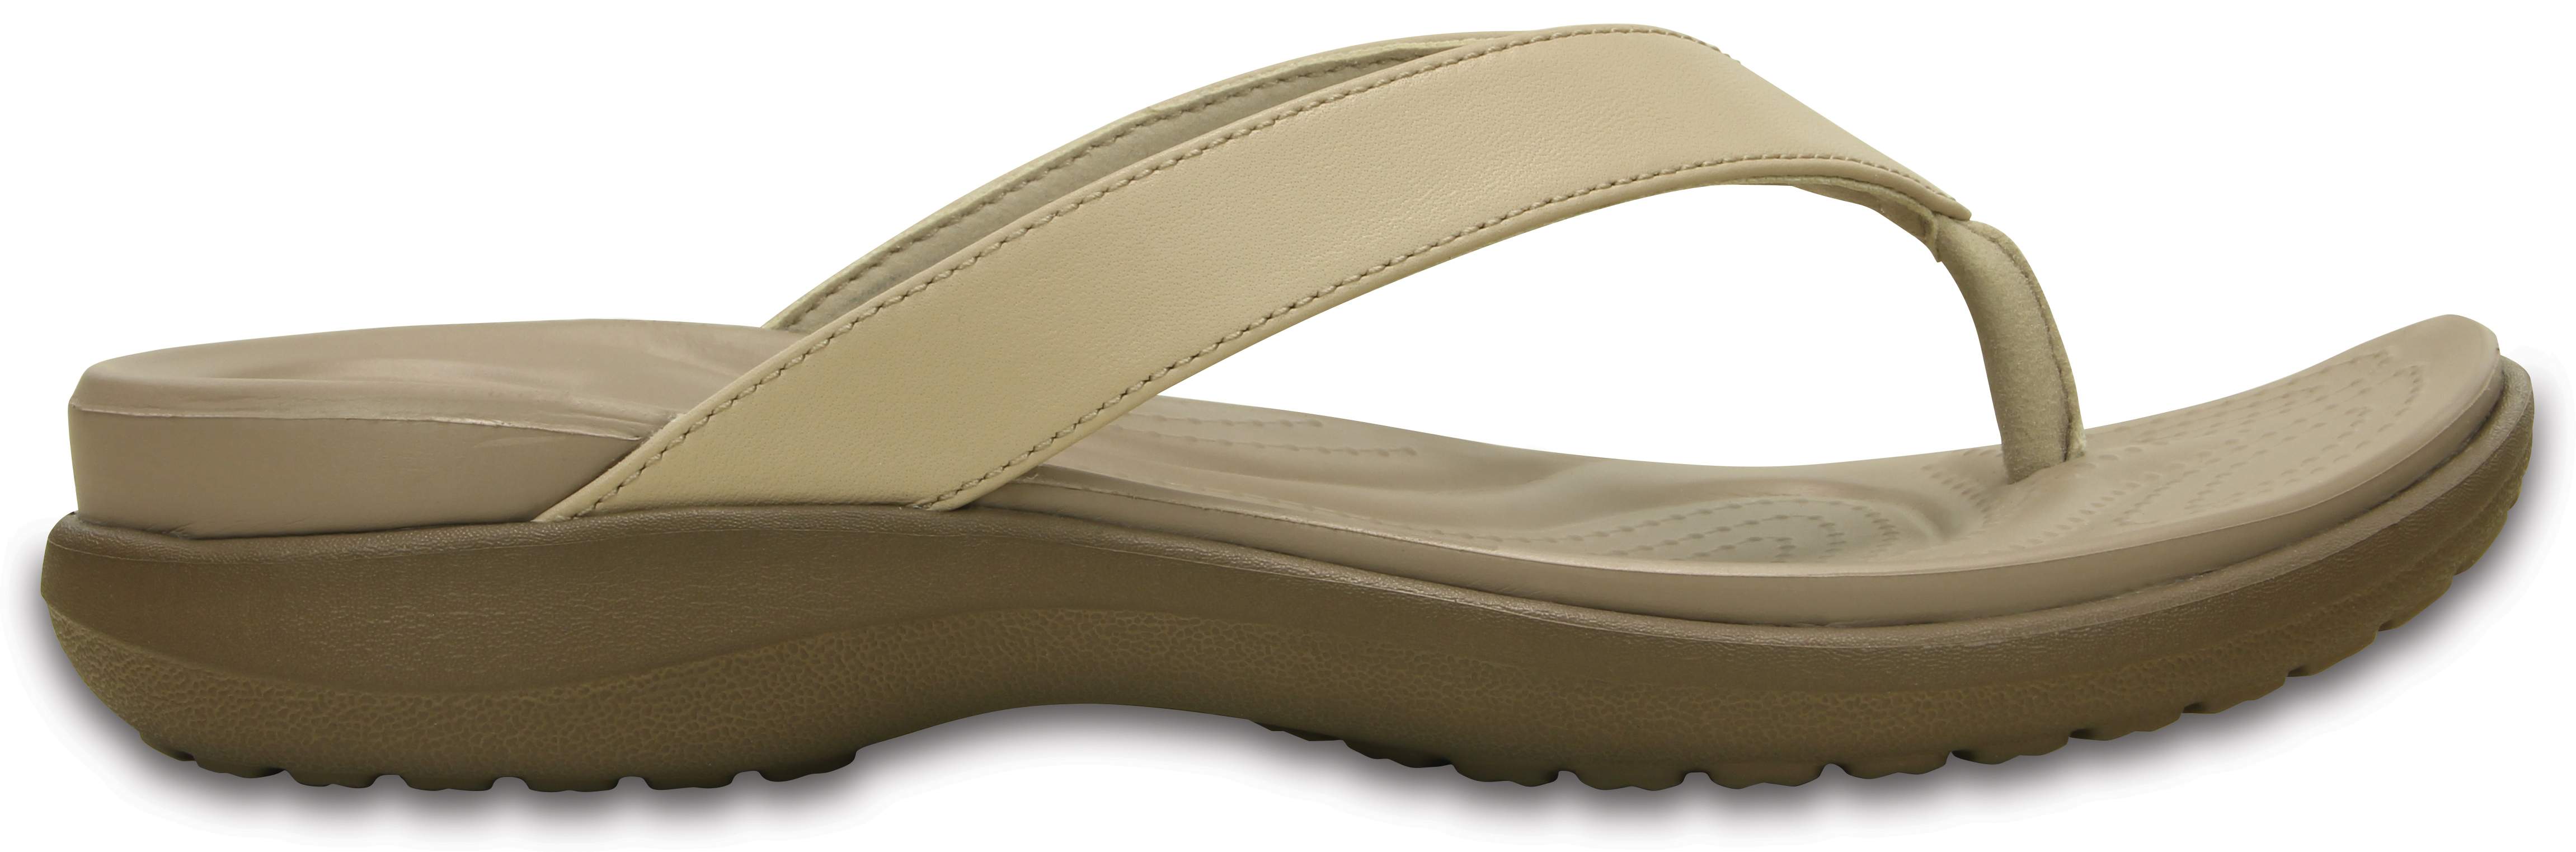 crocs capri sandals women's